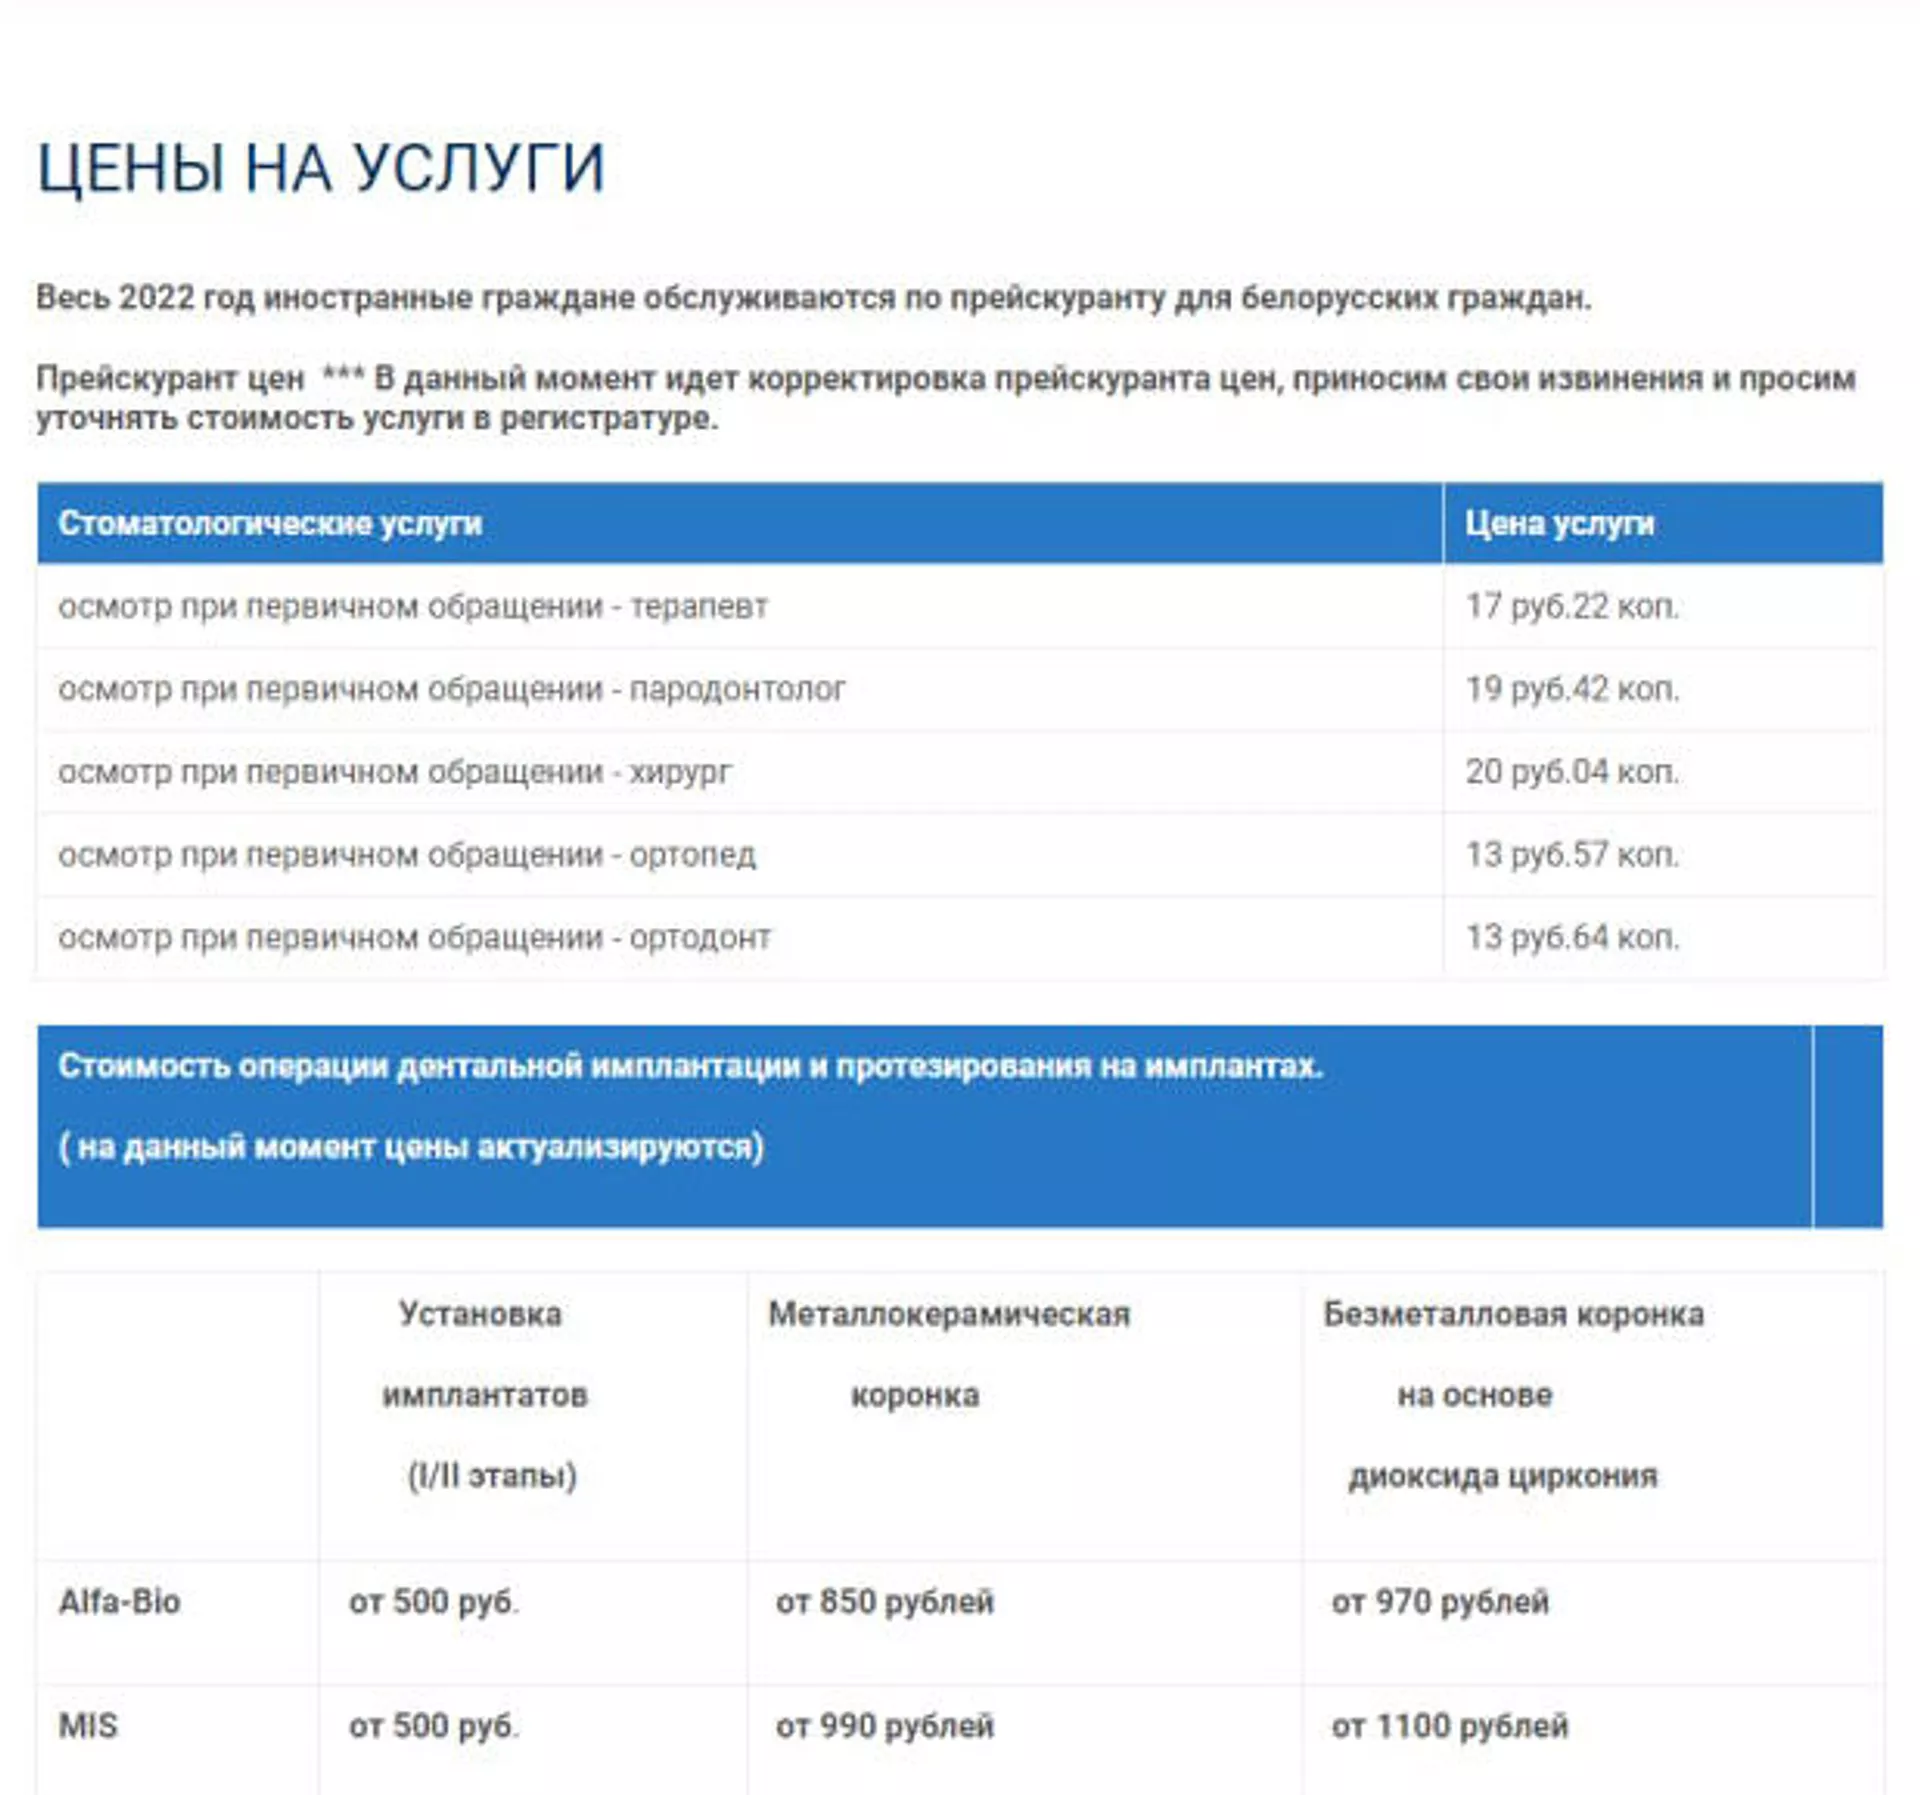 Как видно из прейскуранта на сайте государственной стоматологии, цены на услуги пока актуализируются - Sputnik Беларусь, 1920, 24.03.2022